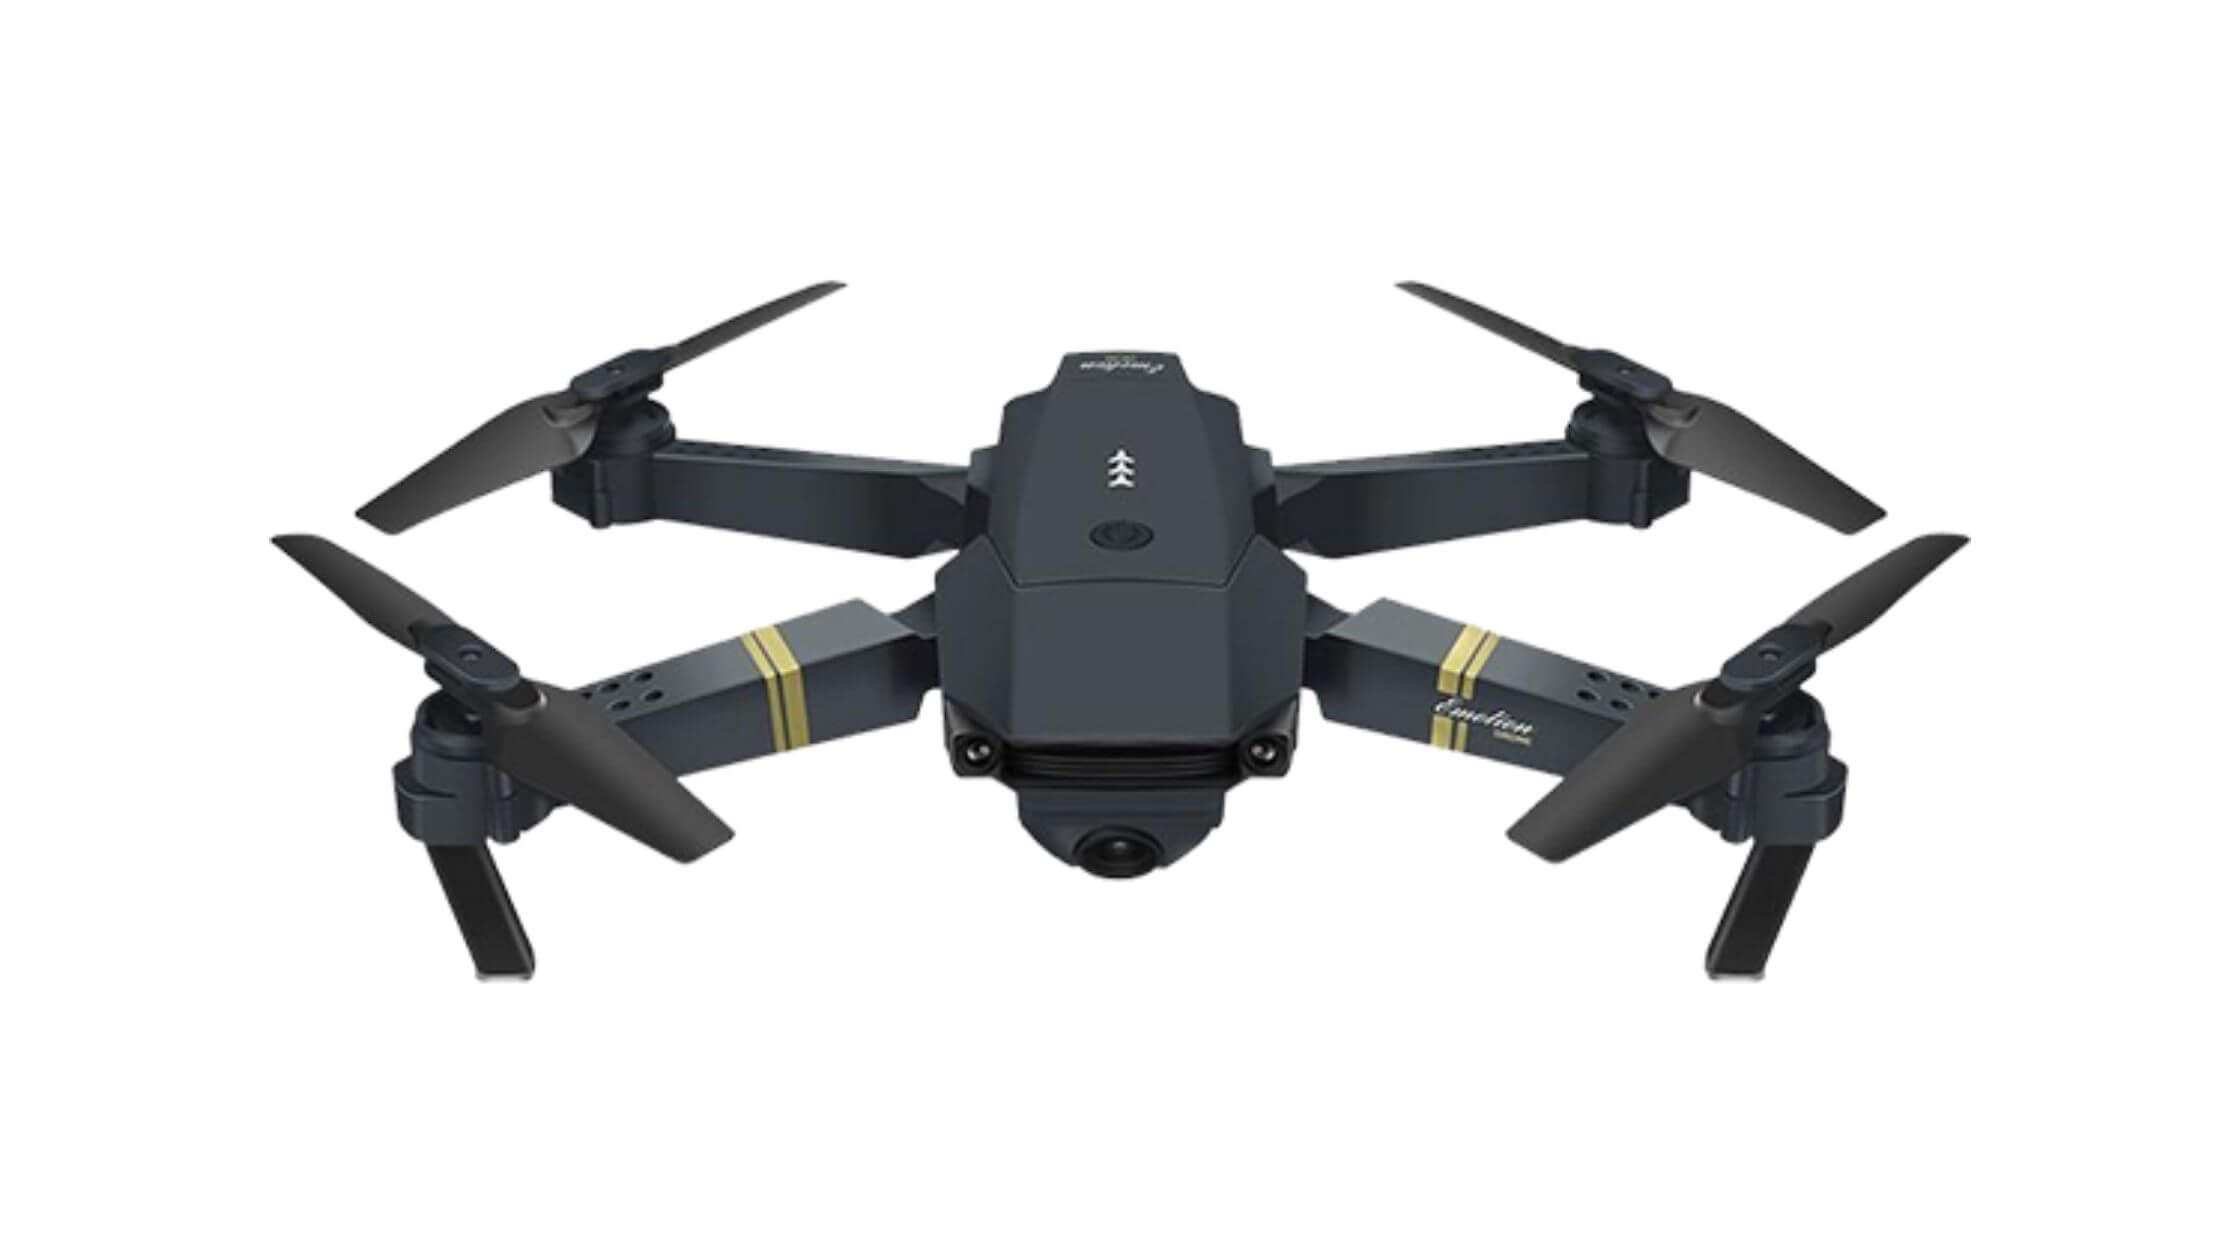 Skyline X Drone Reviews